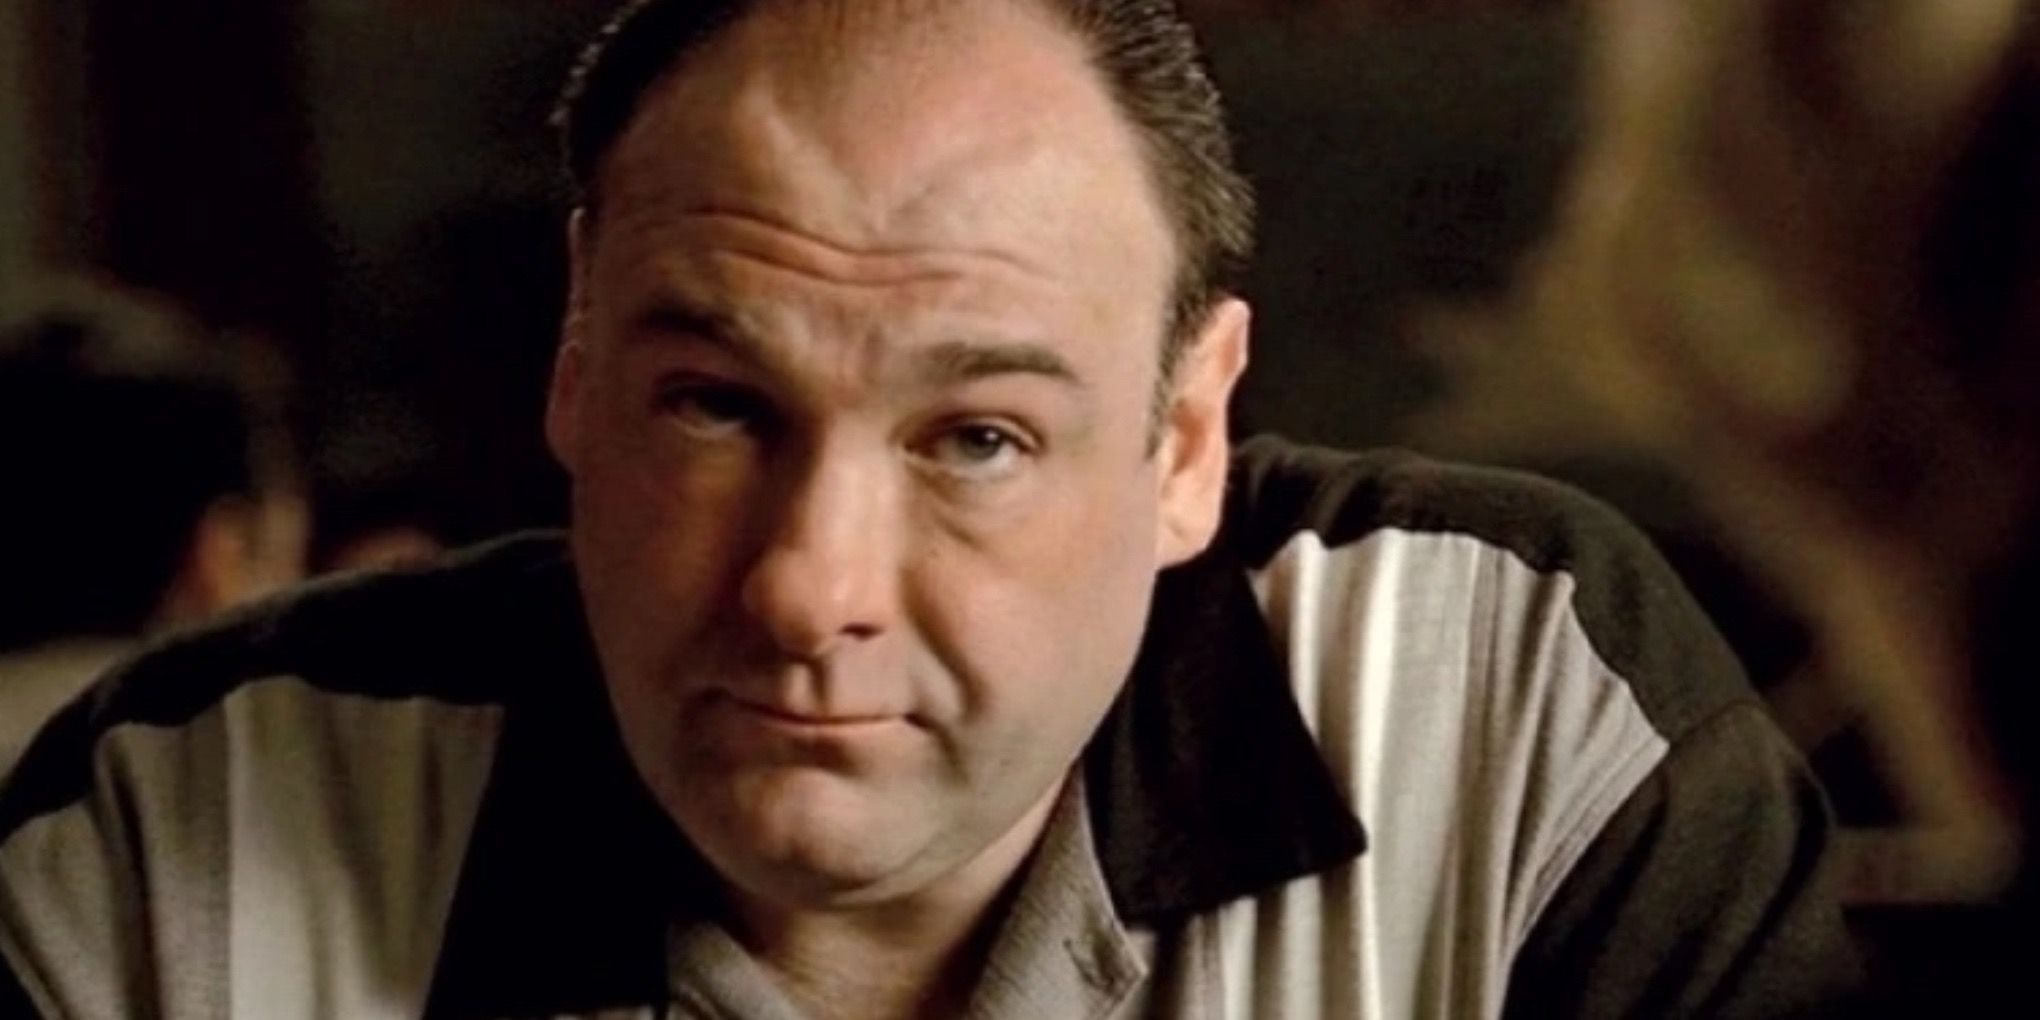 James Gandolfini as Tony Soprano in The Sopranos (1999-2007)